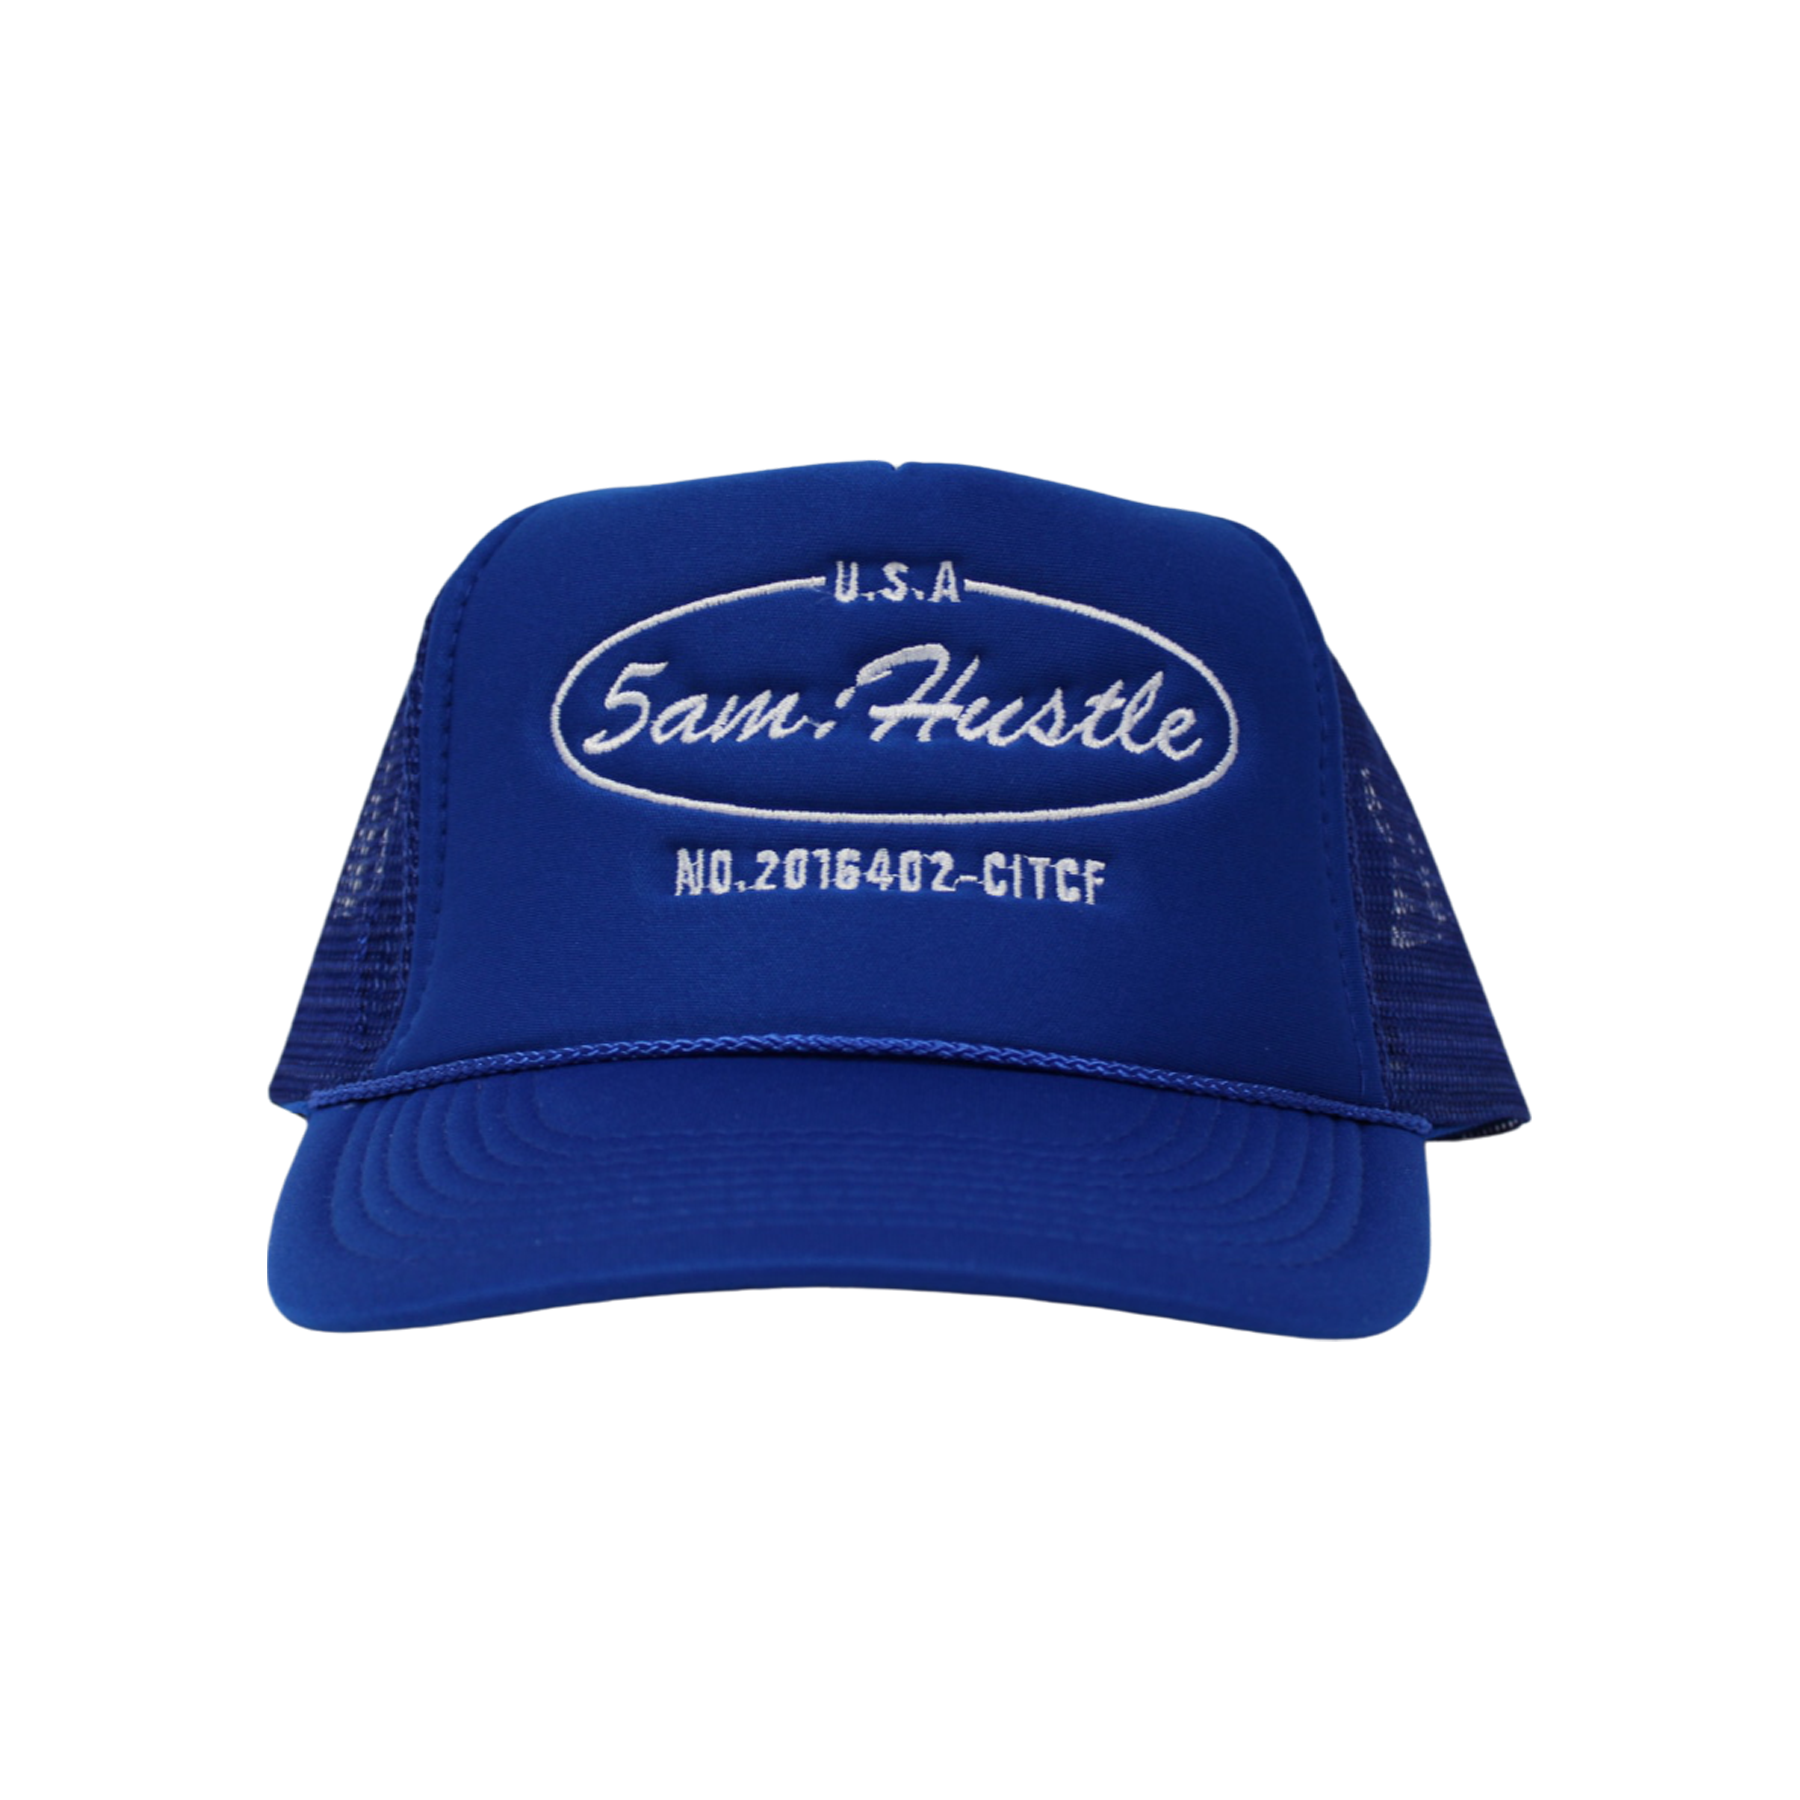 5am:Hustle Trucker Hat